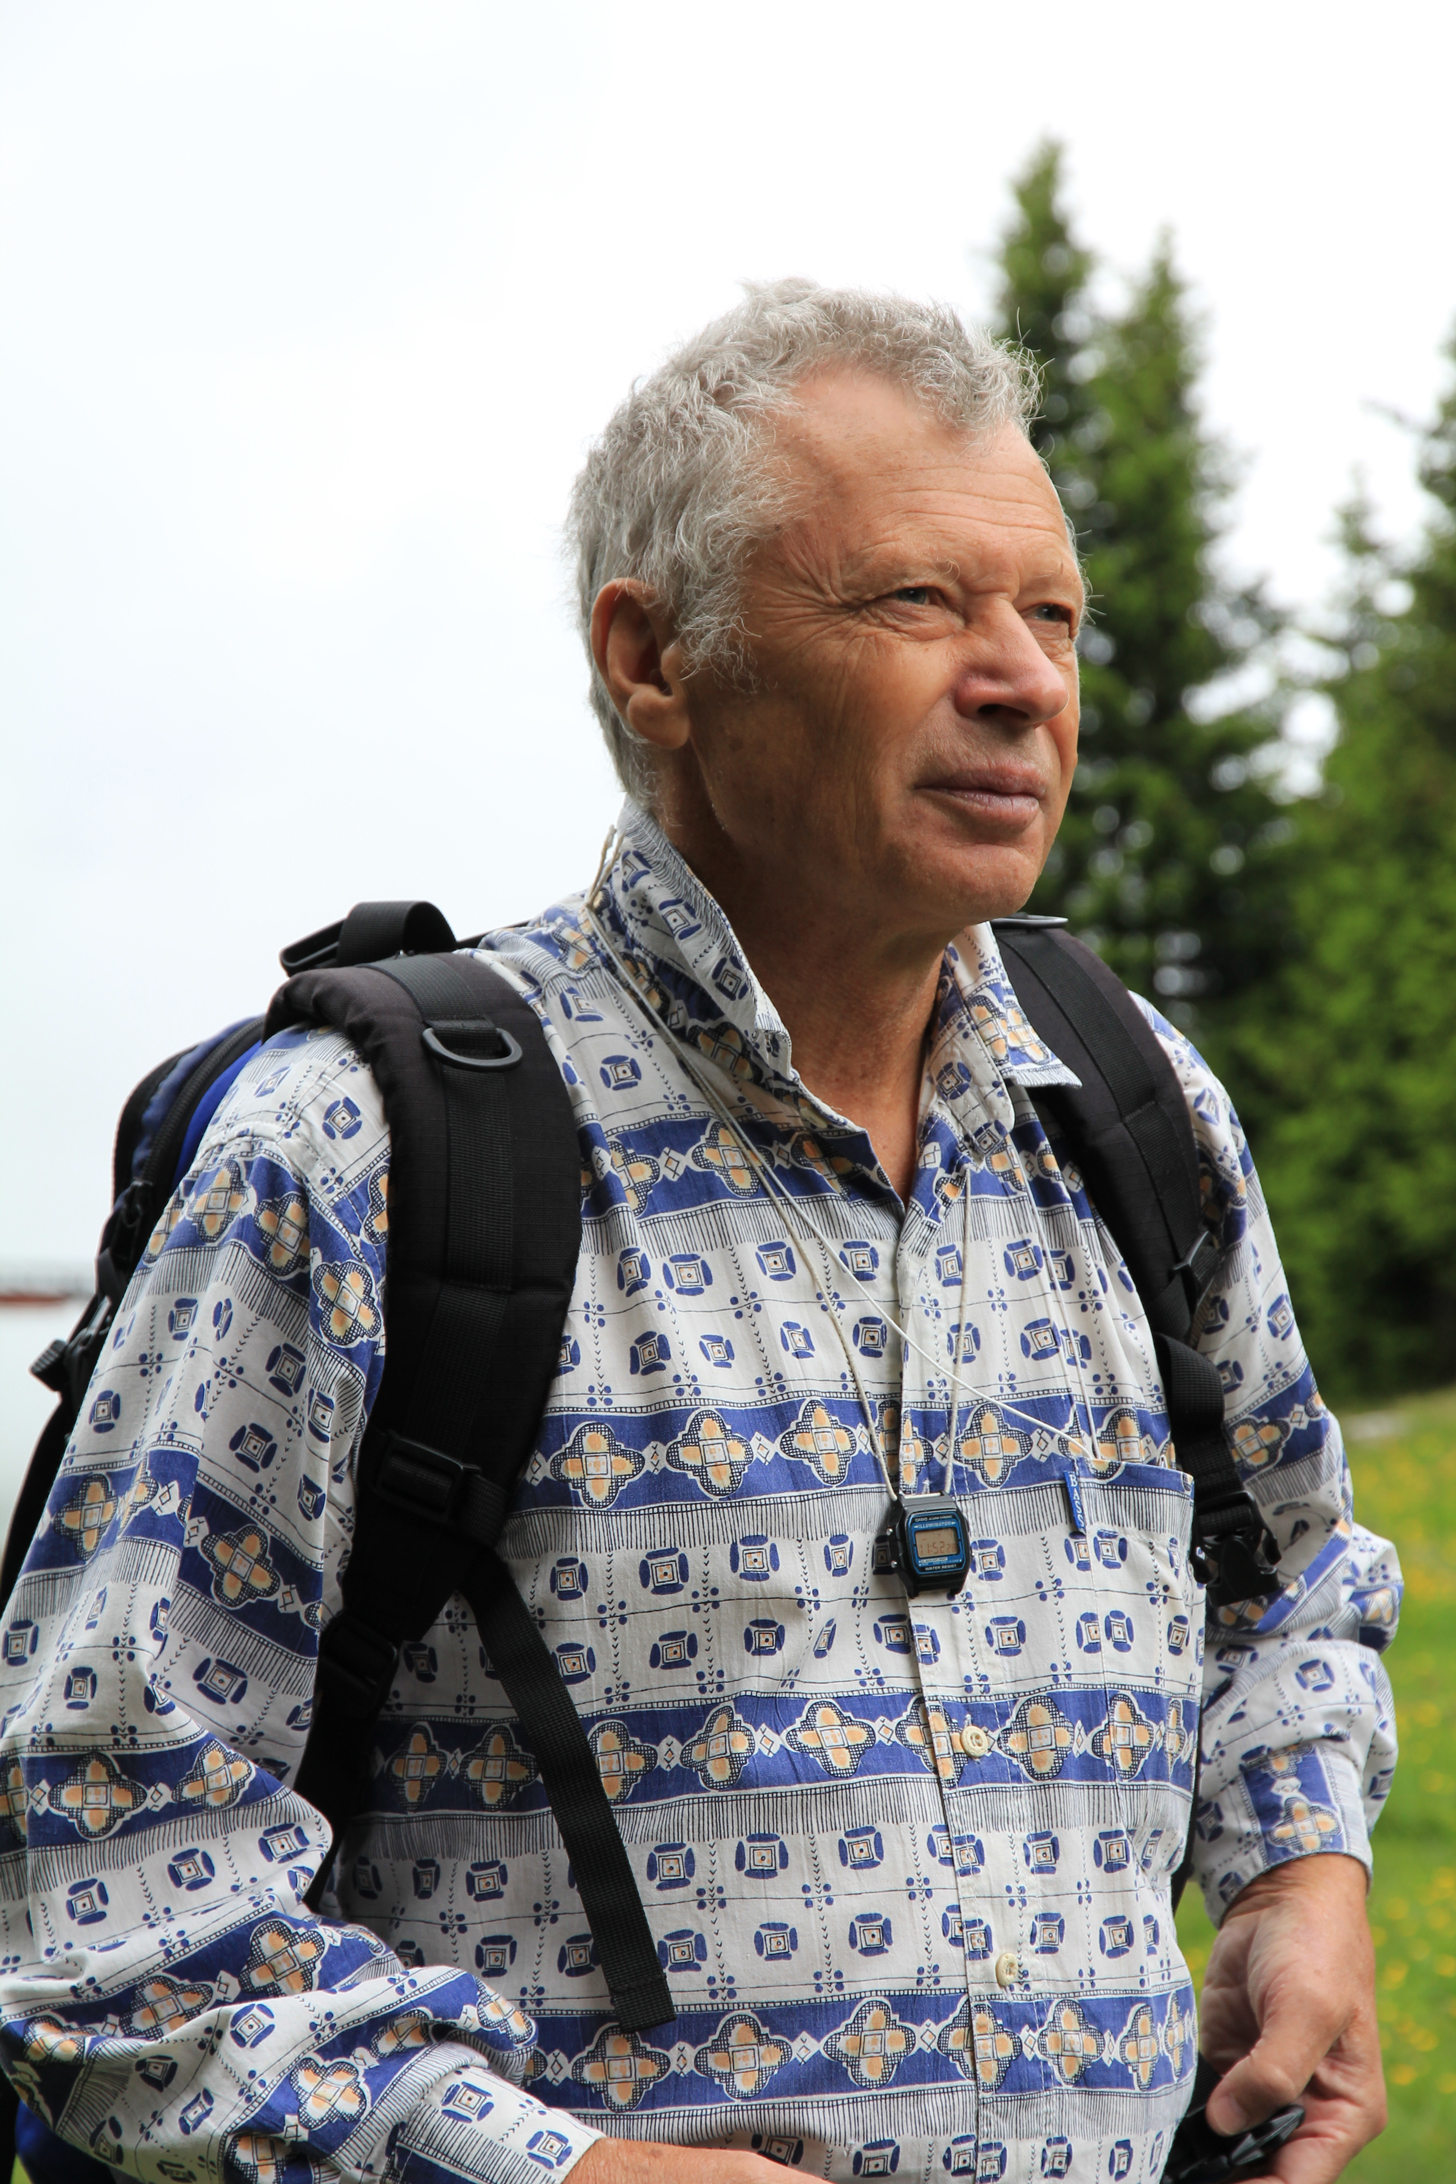  Валентин Андреевич Иванов. Австрия, горы, июль 2013. Фото с сайта http://www.mountain.ru/